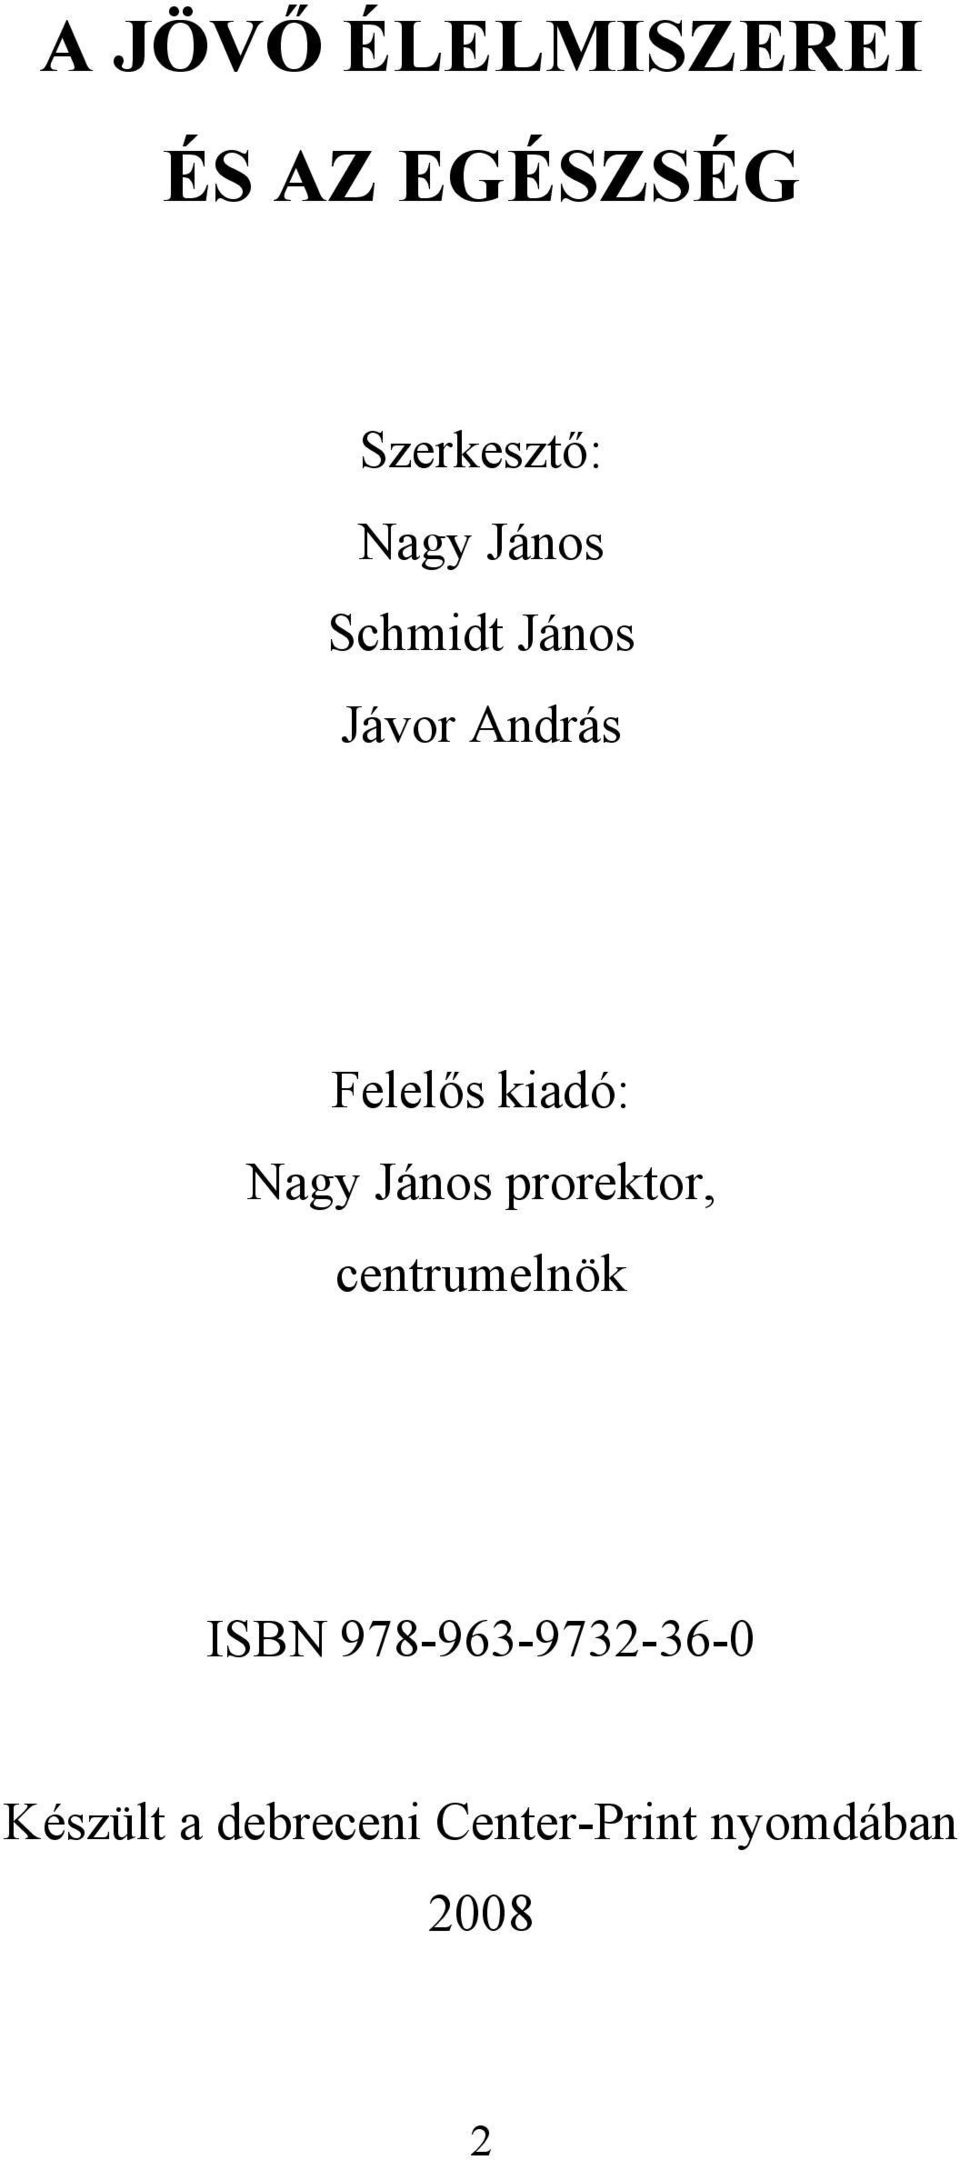 kidó: Ngy János prorektor, centrumelnök ISBN